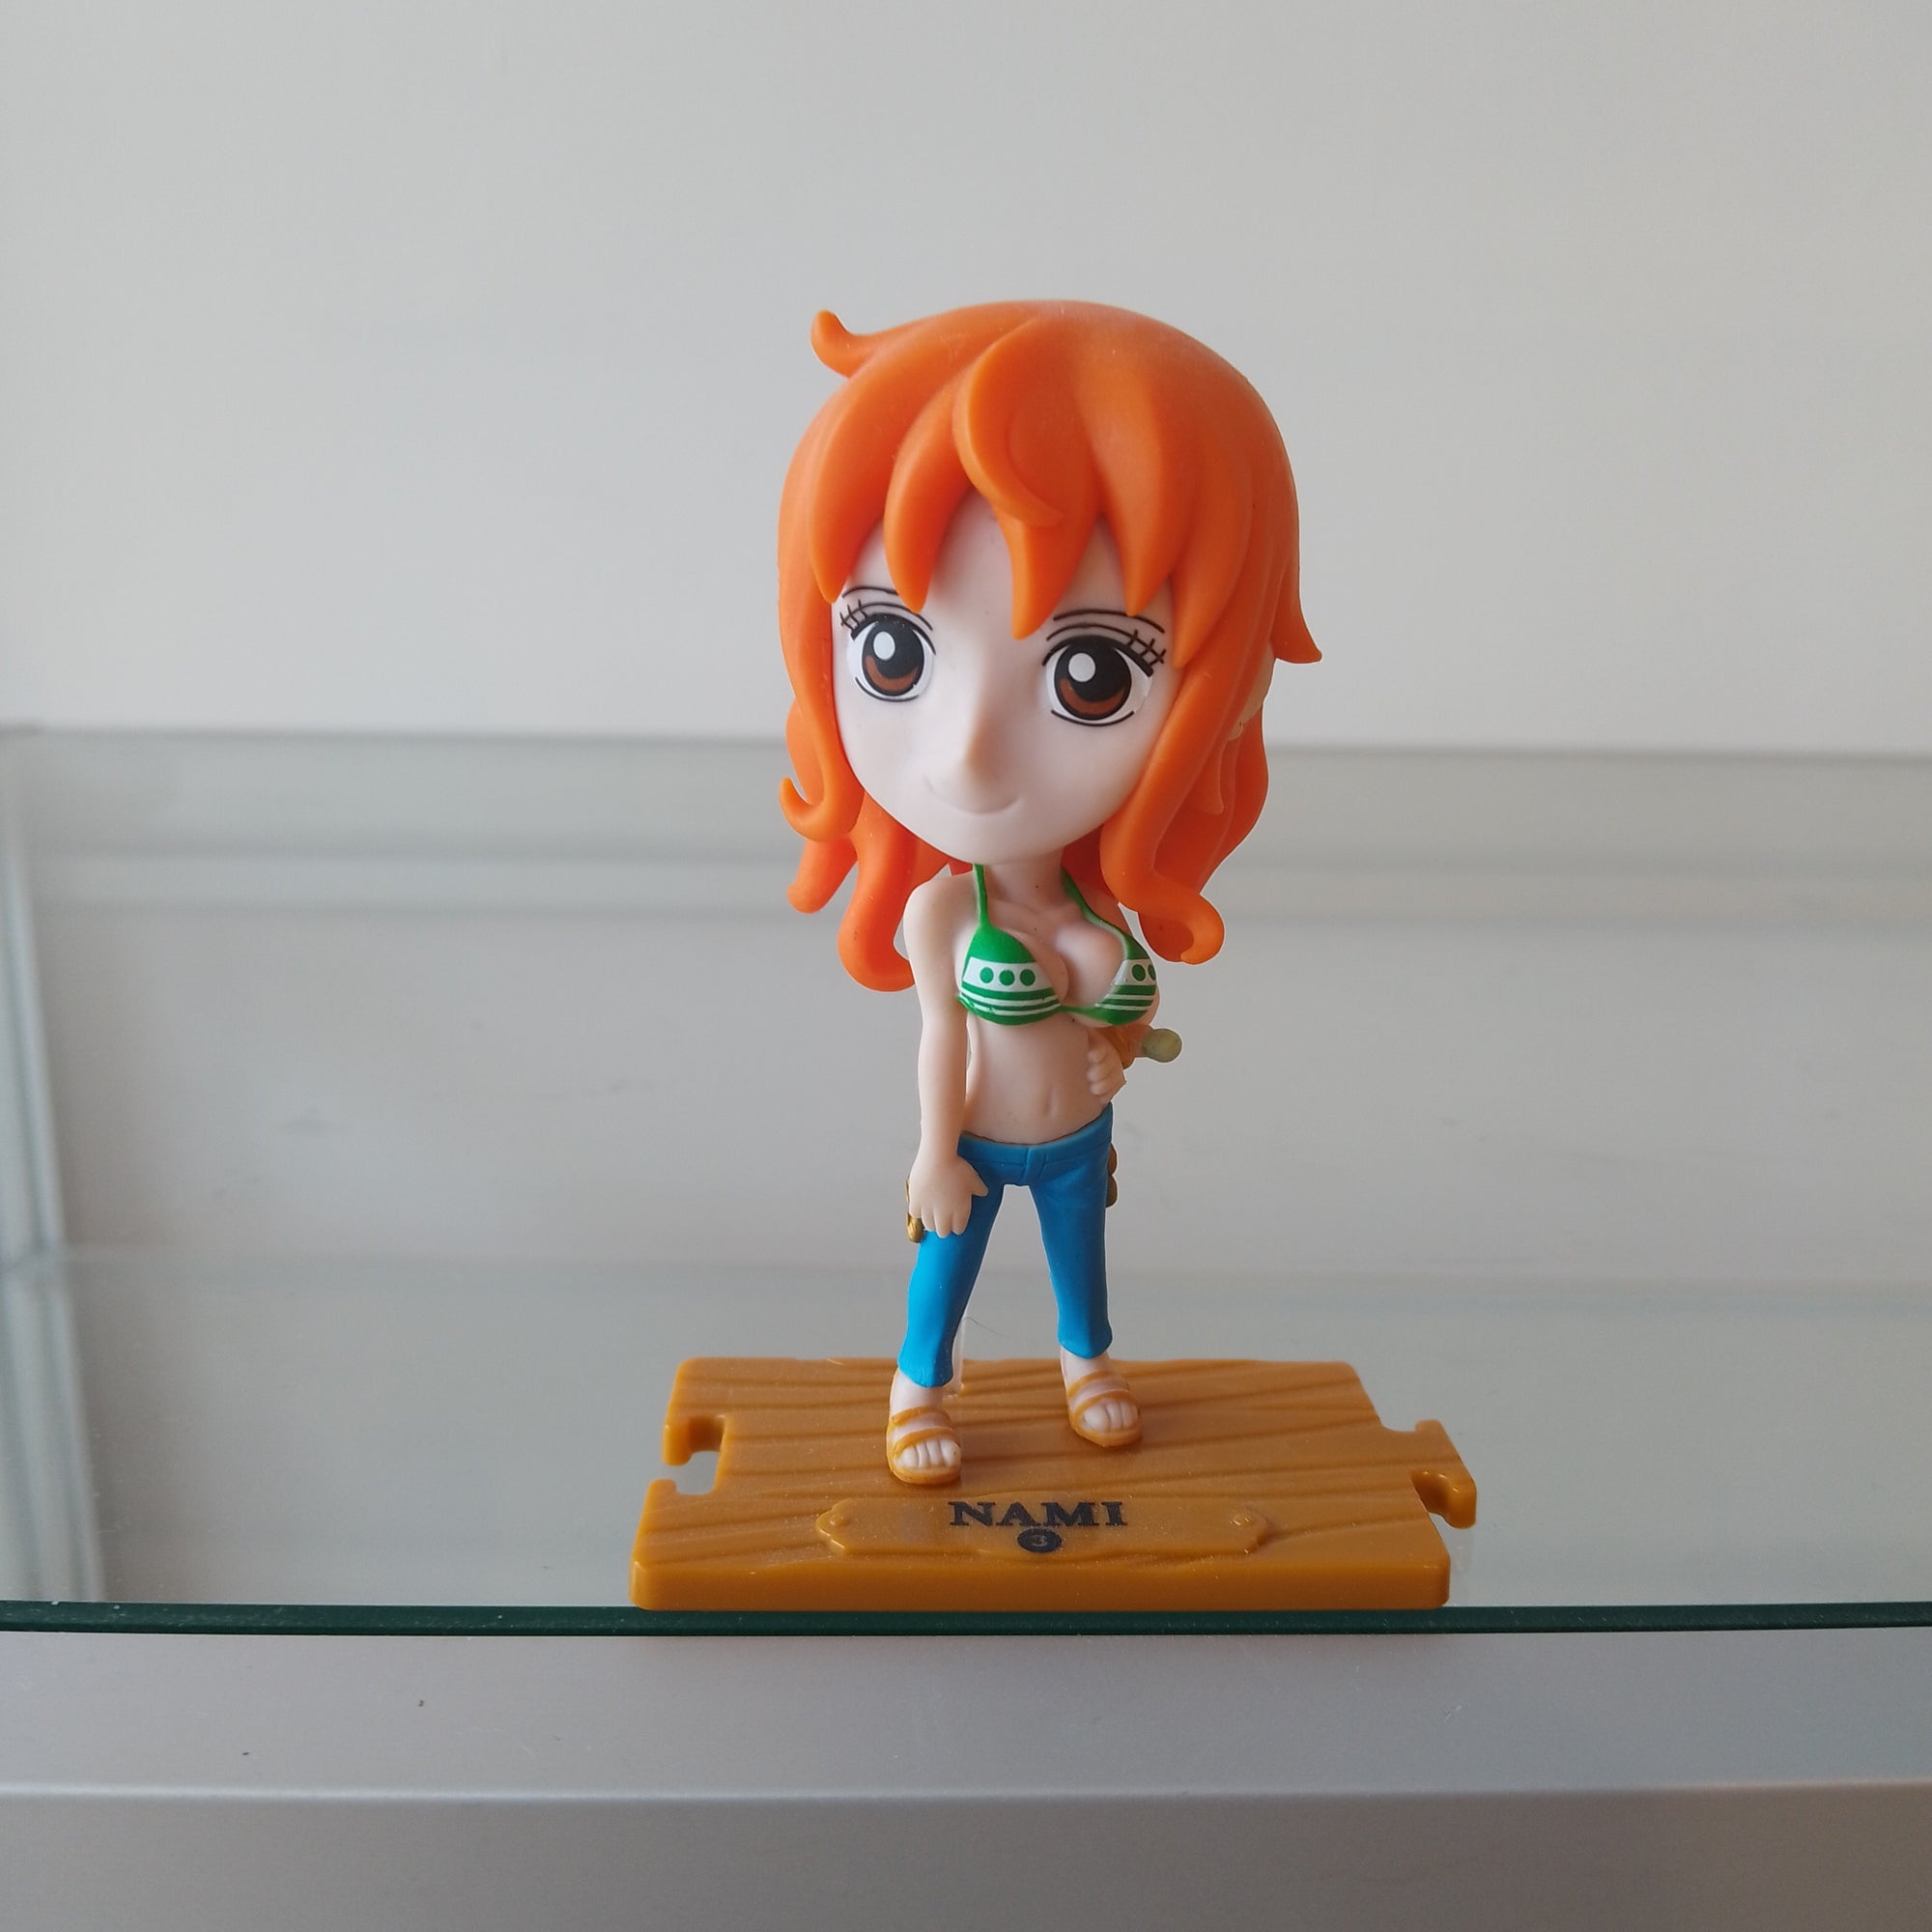 Sanji - One Piece Toy Figure - Mindzai Toy Shop